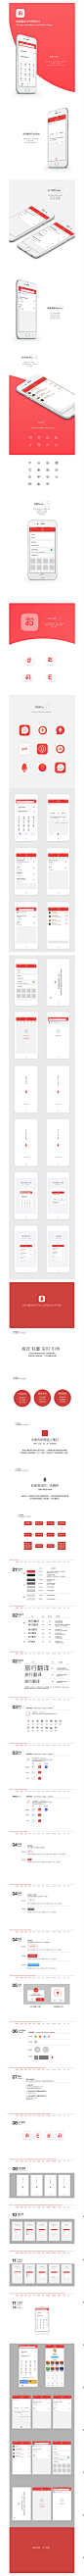 15旅游翻译app界面设计&设计规范ios－ui logo icon／闪屏／规范／展图／完整设计流程 